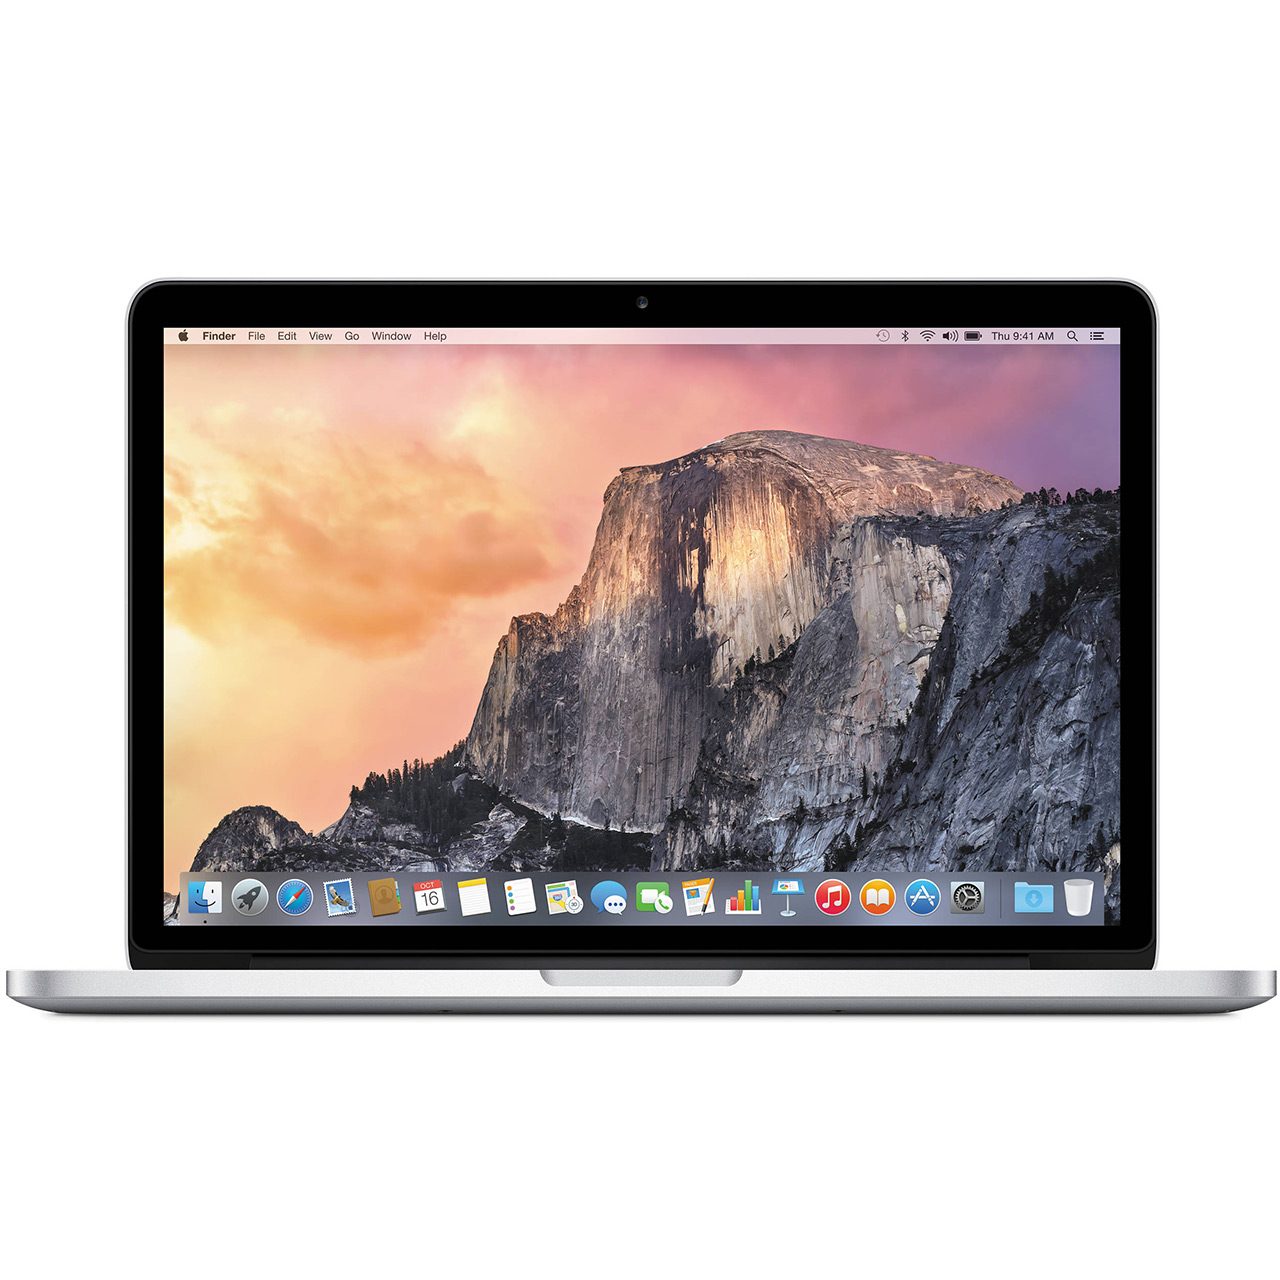 لپ تاپ اپل 13 اینچی مدل MacBook Pro MF840 پردازنده Core i5 رم 8GB حافظه 256GB